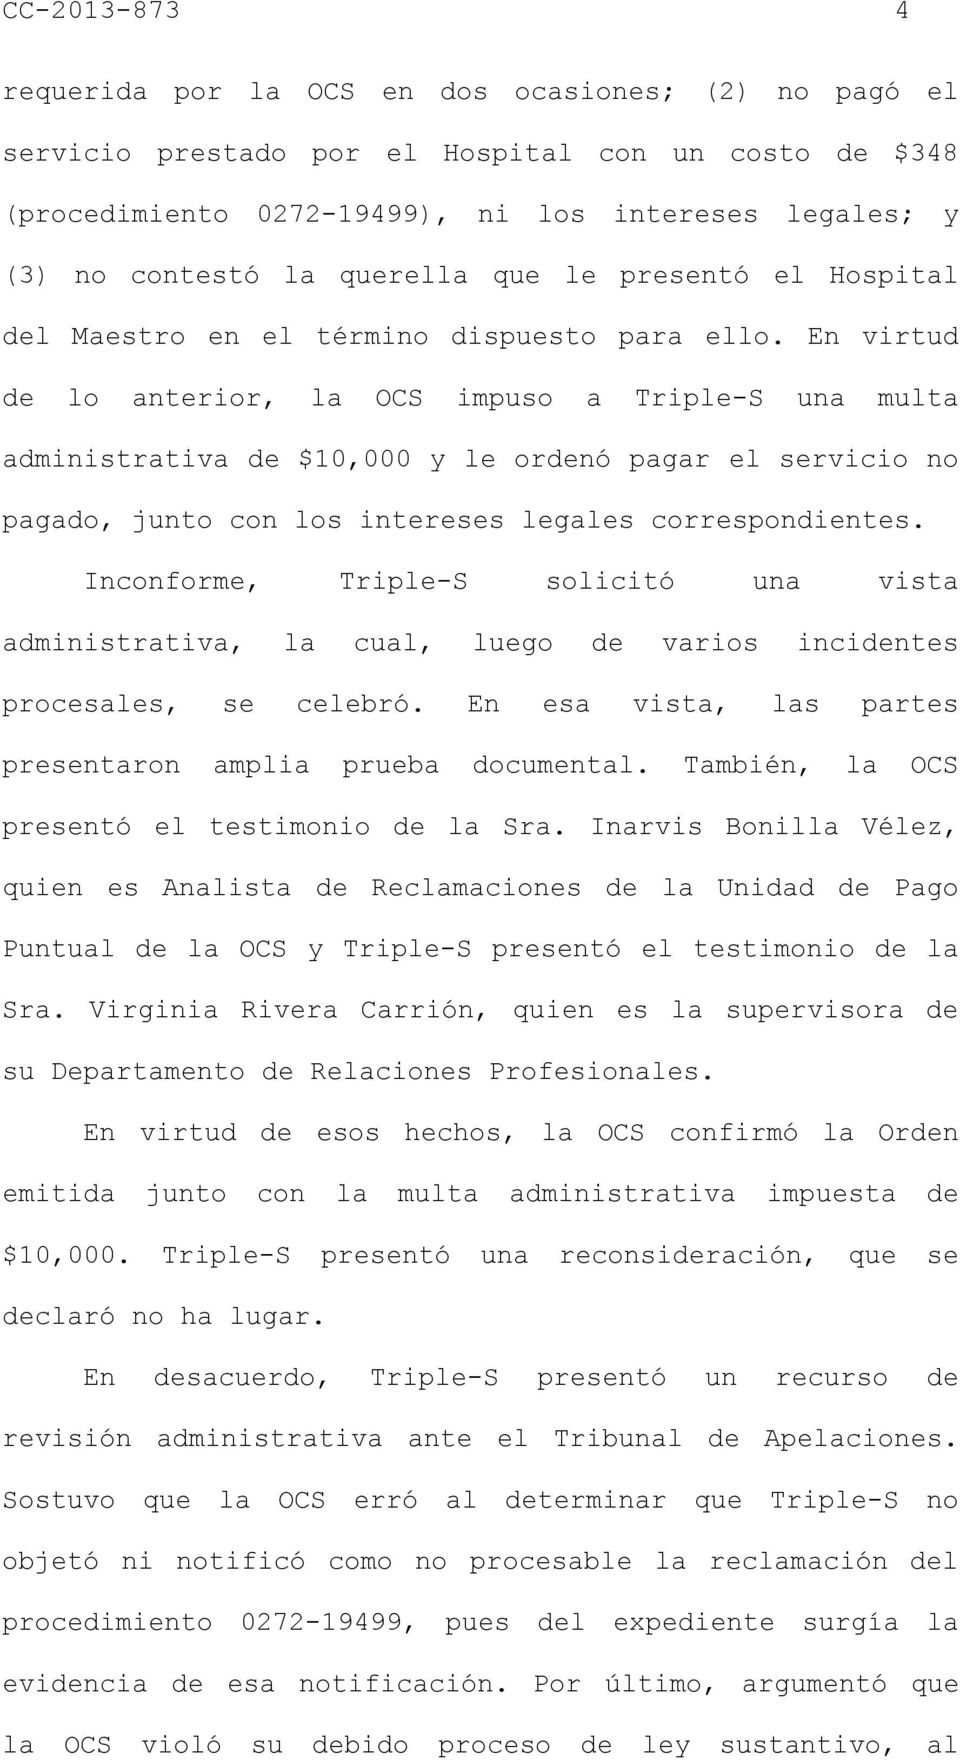 En virtud de lo anterior, la OCS impuso a Triple-S una multa administrativa de $10,000 y le ordenó pagar el servicio no pagado, junto con los intereses legales correspondientes.